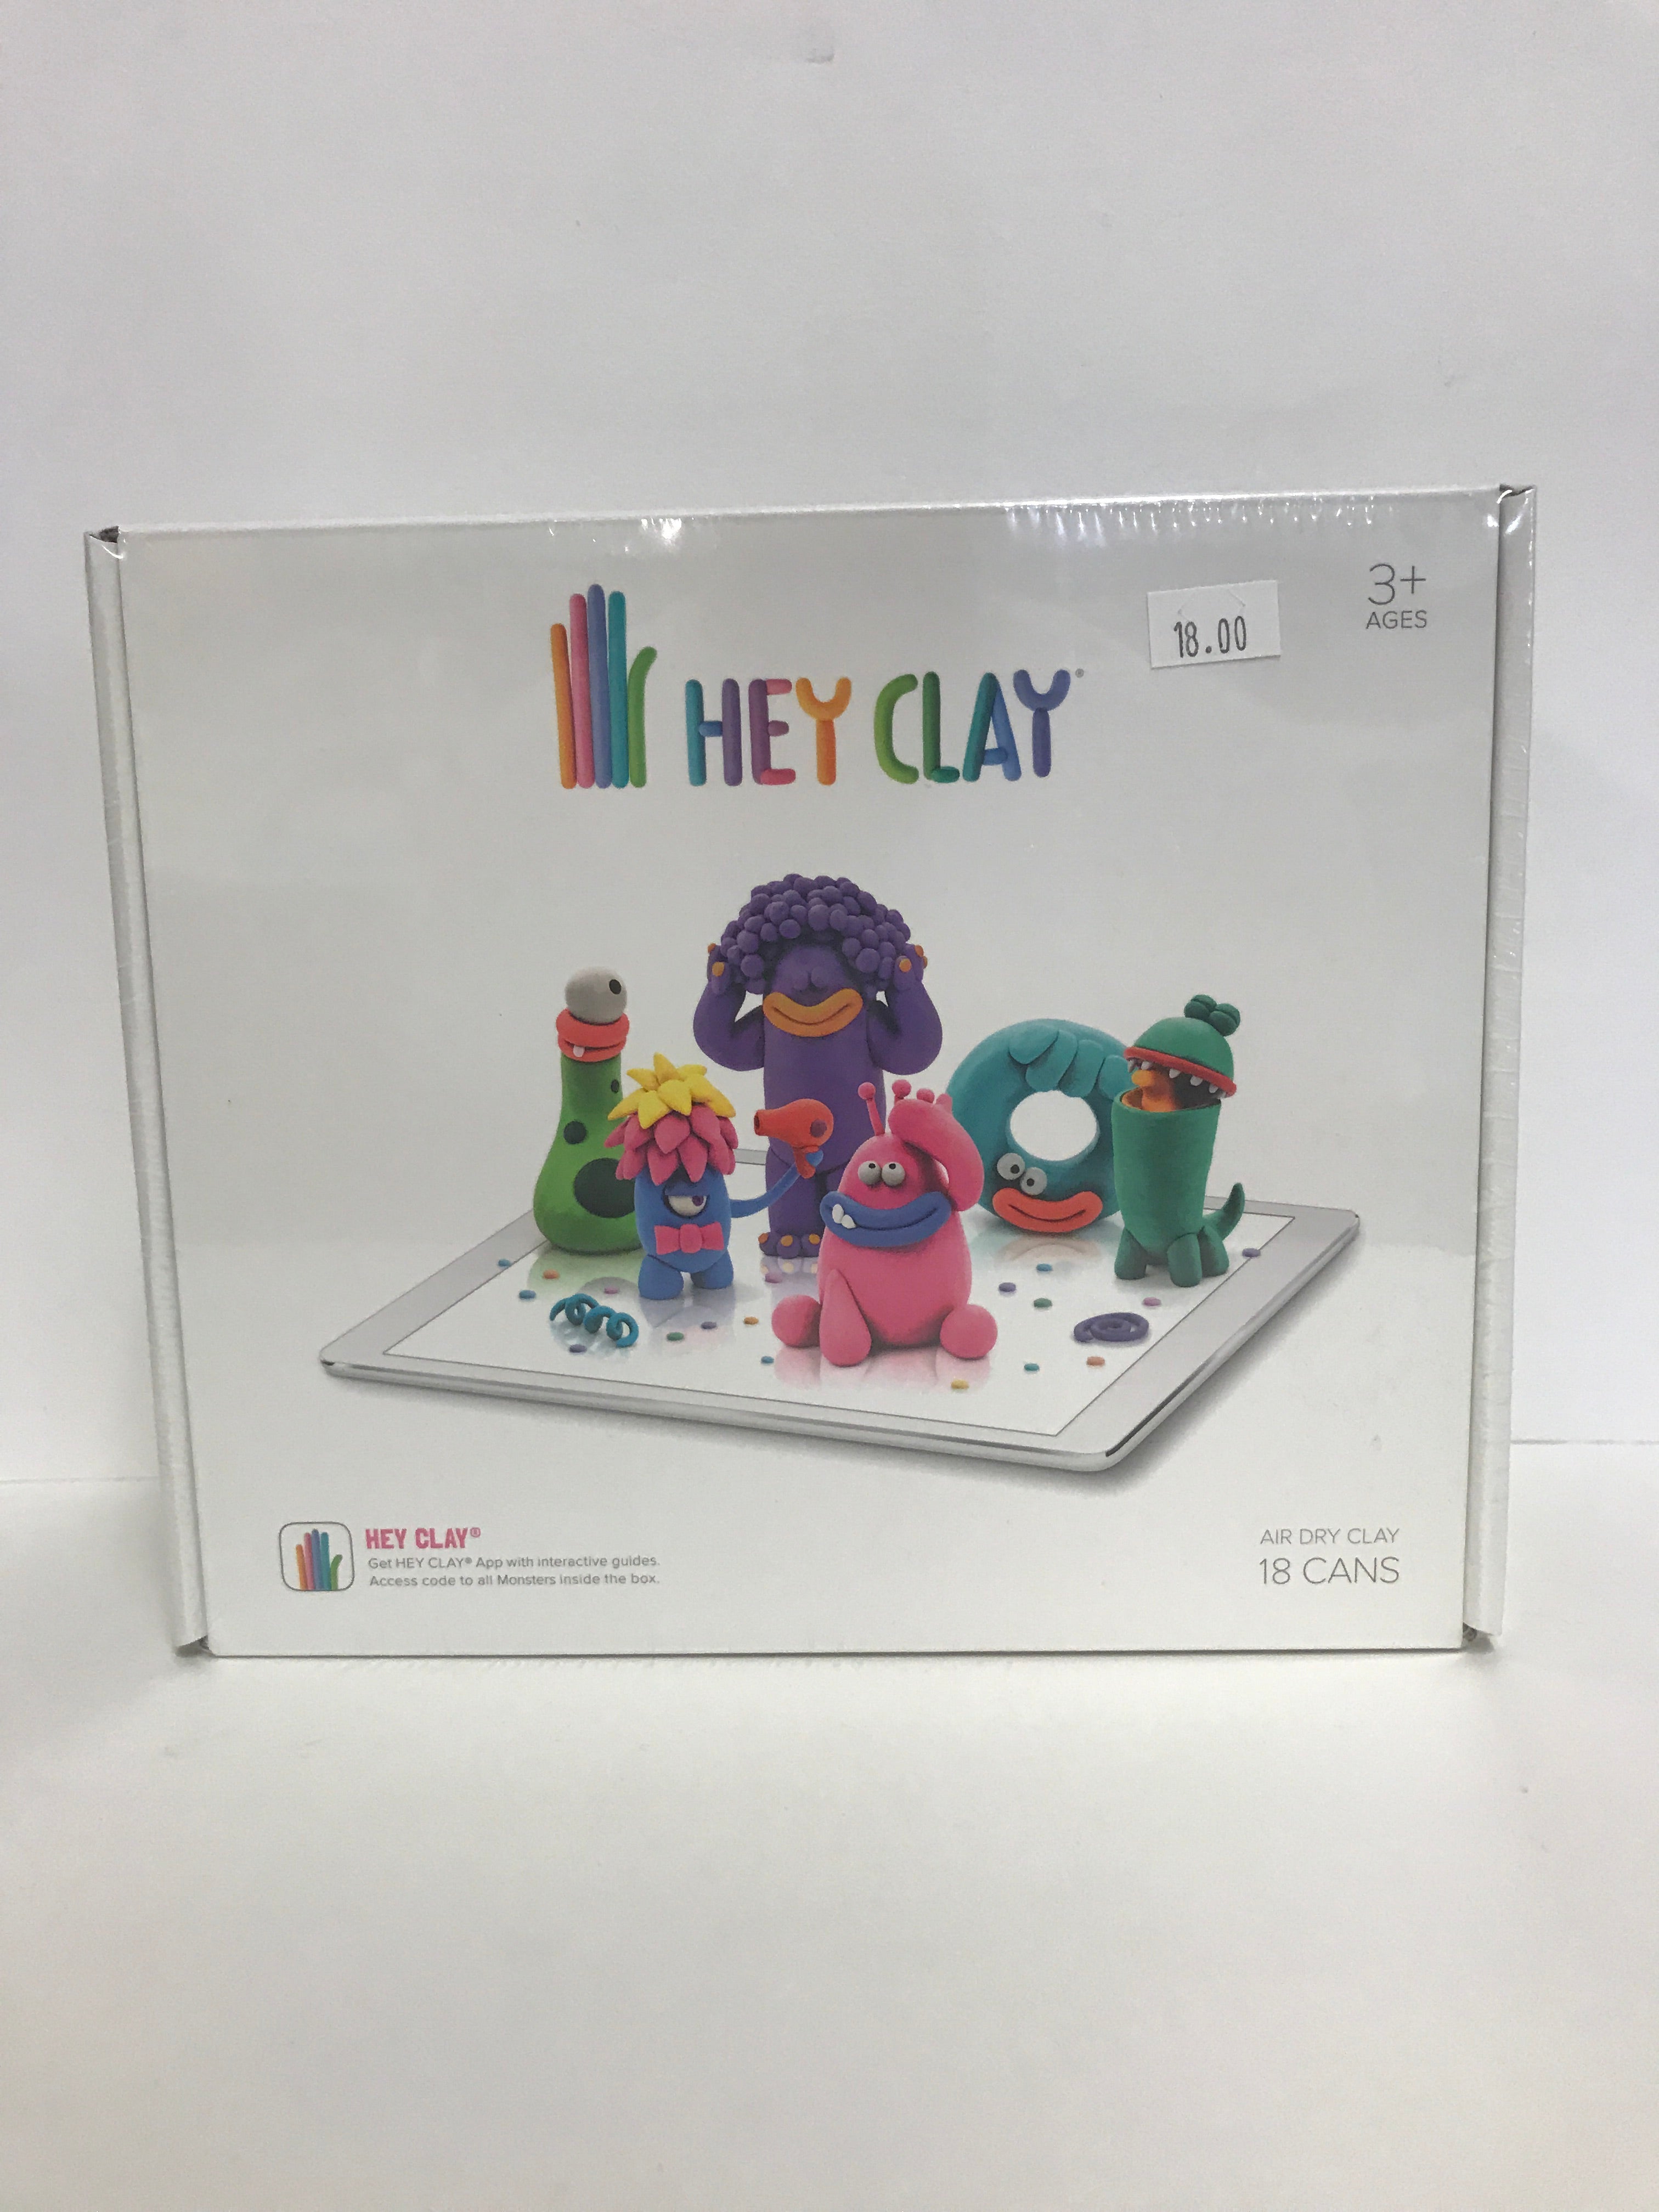 HEY CLAY - ALIENS  The Happy Puzzle Company